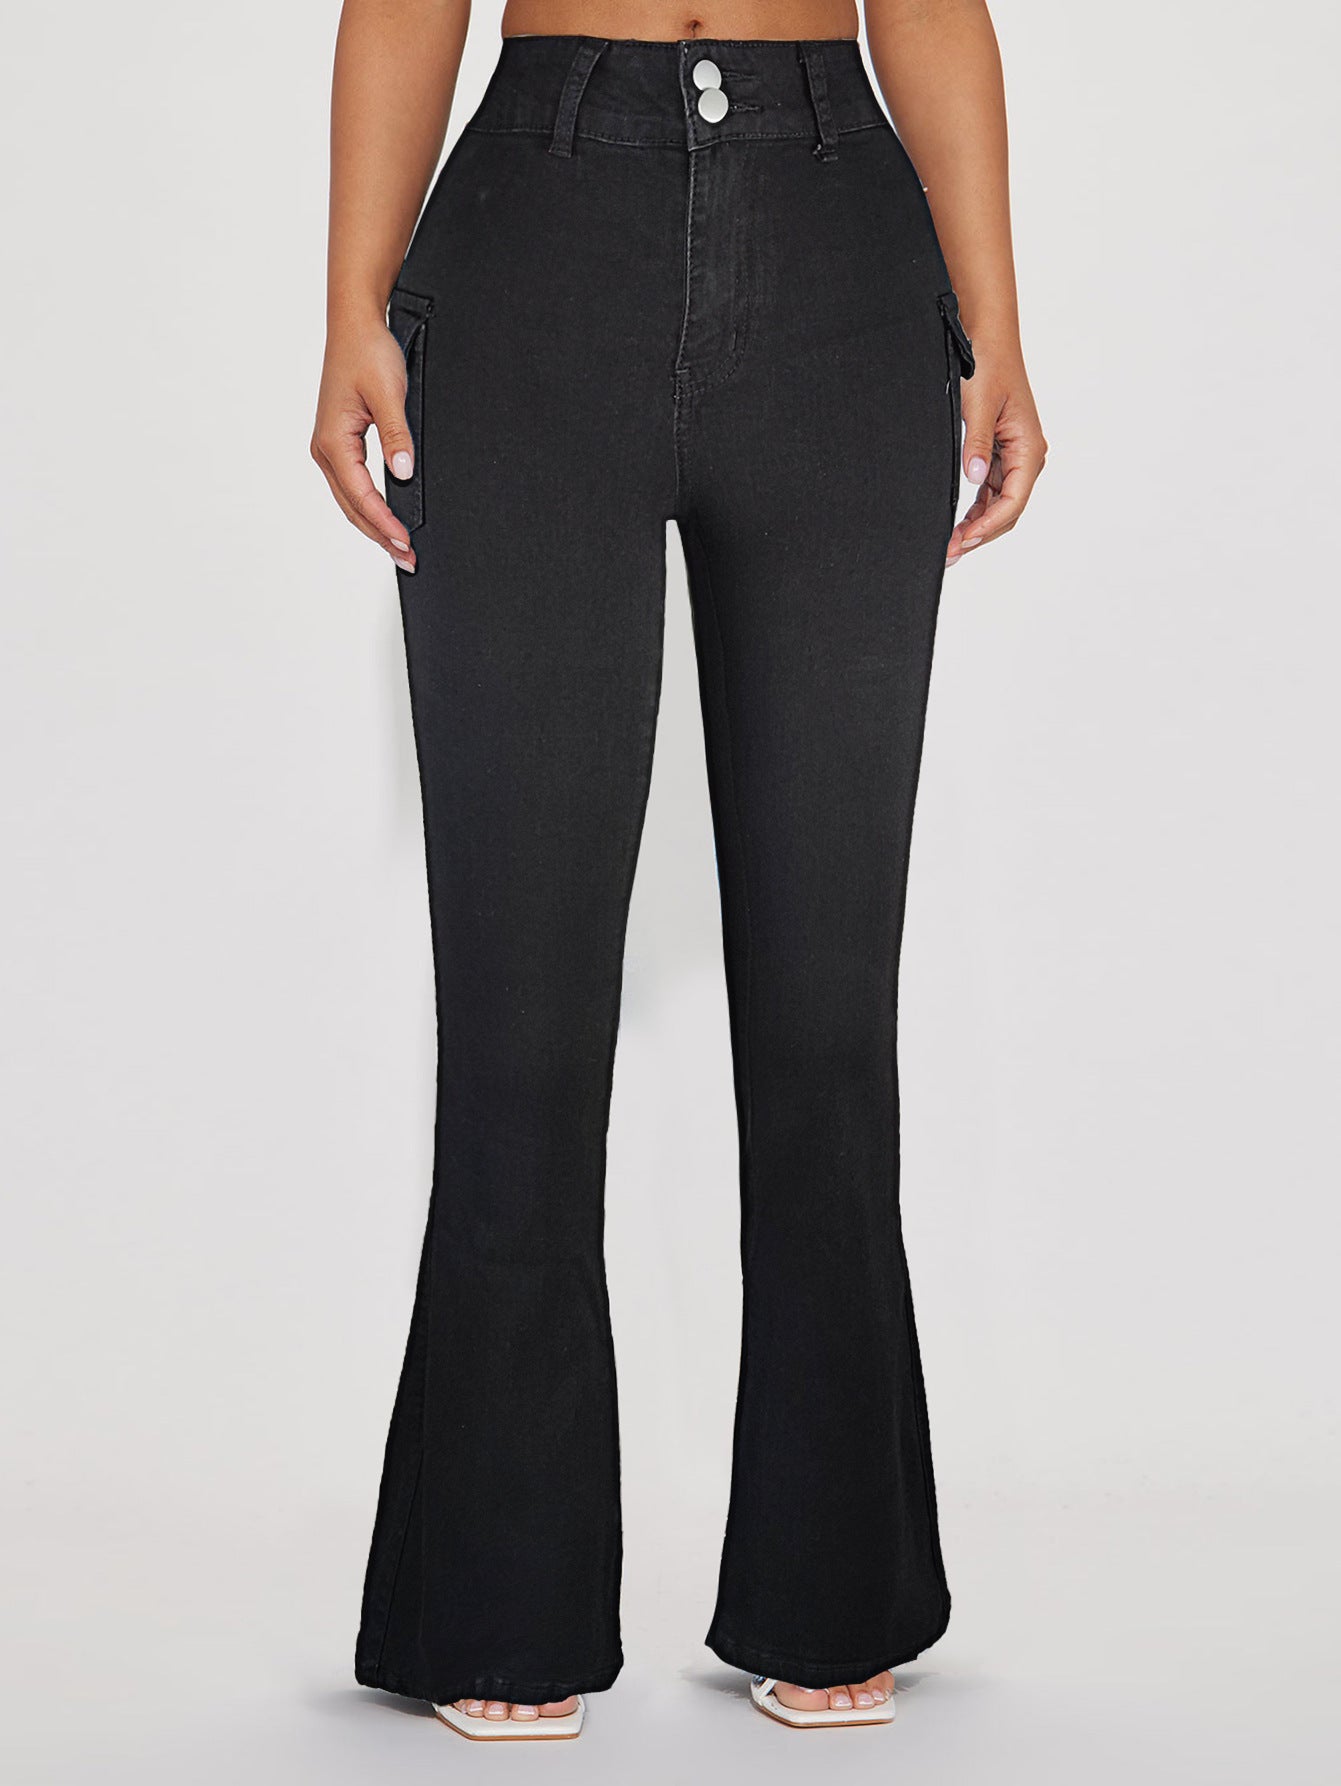 FZ Women's High Slim Denim Bootcut Pants - FZwear